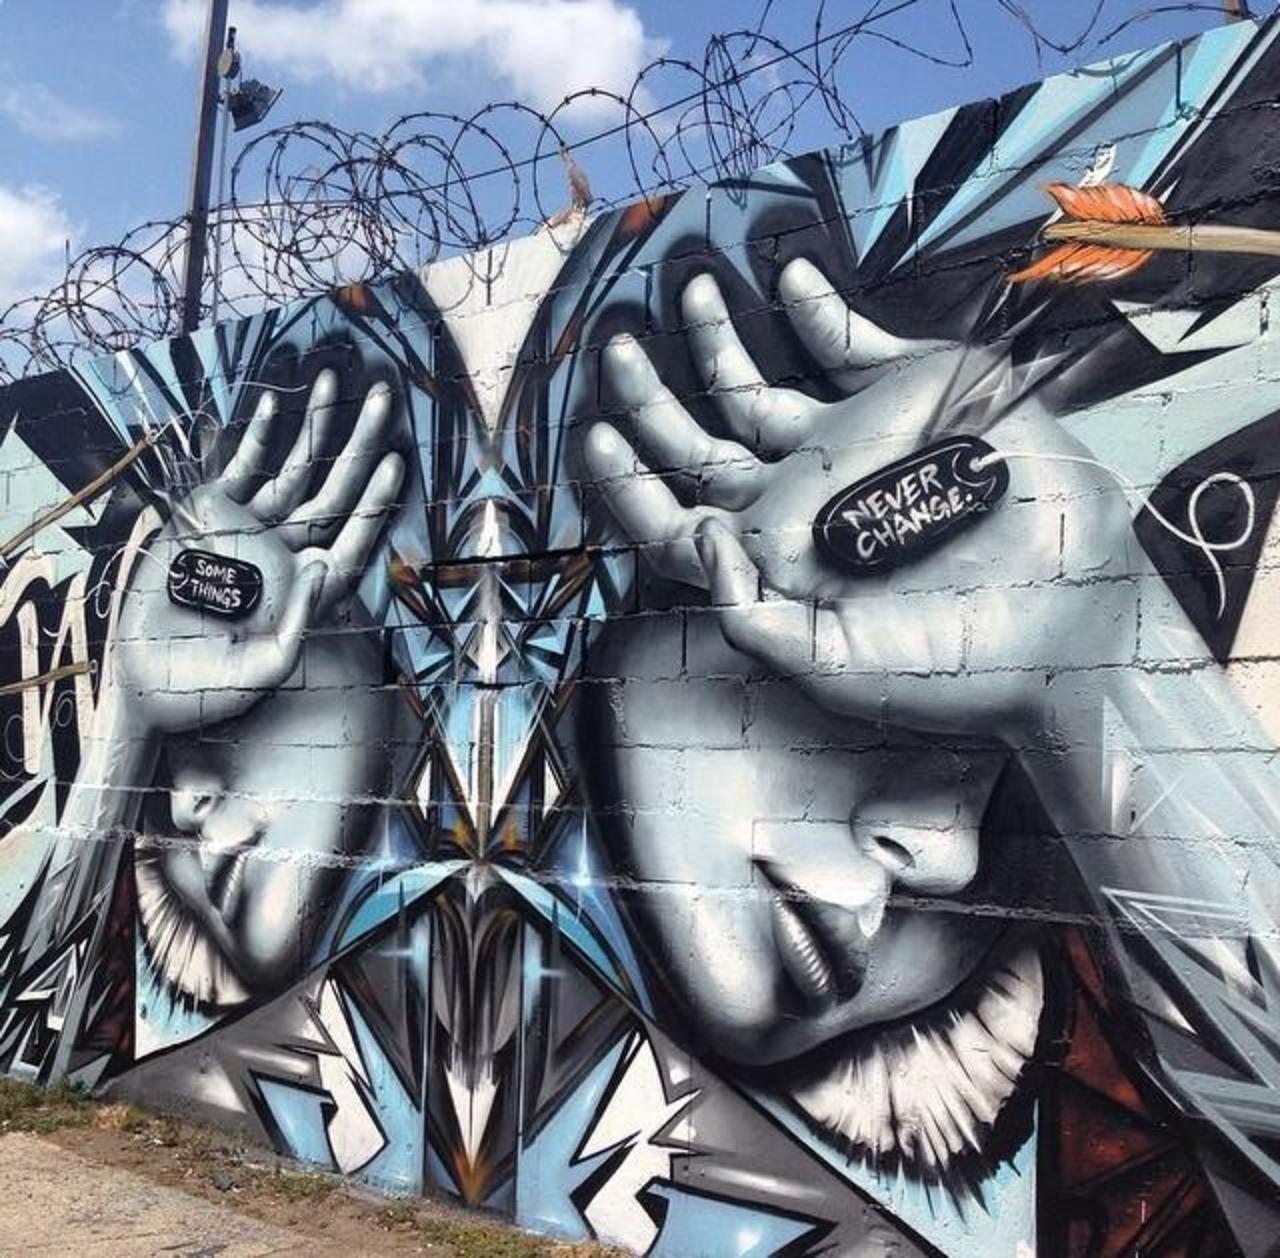 RT @designopinion: Artist @StarFighterA new Street Art mural titled 'Some Things Never Change' #art #mural #graffiti #streetart https://t.co/v7Wqyon06I